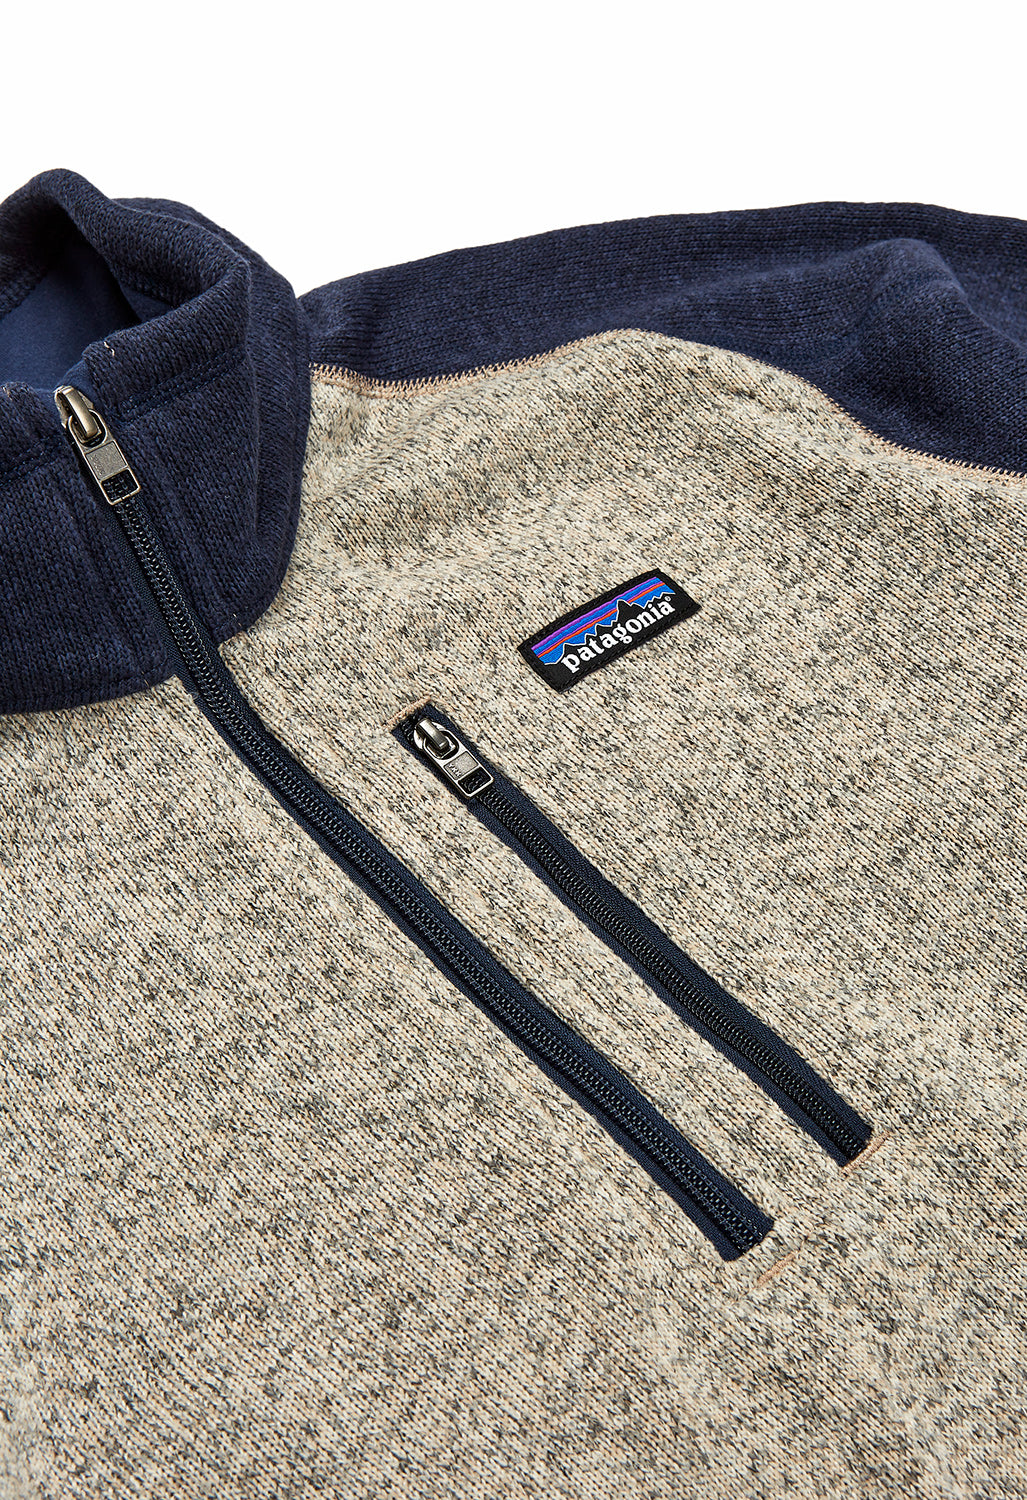 Patagonia Better Sweater Men's 1/4 Zip Fleece - Oar Tan